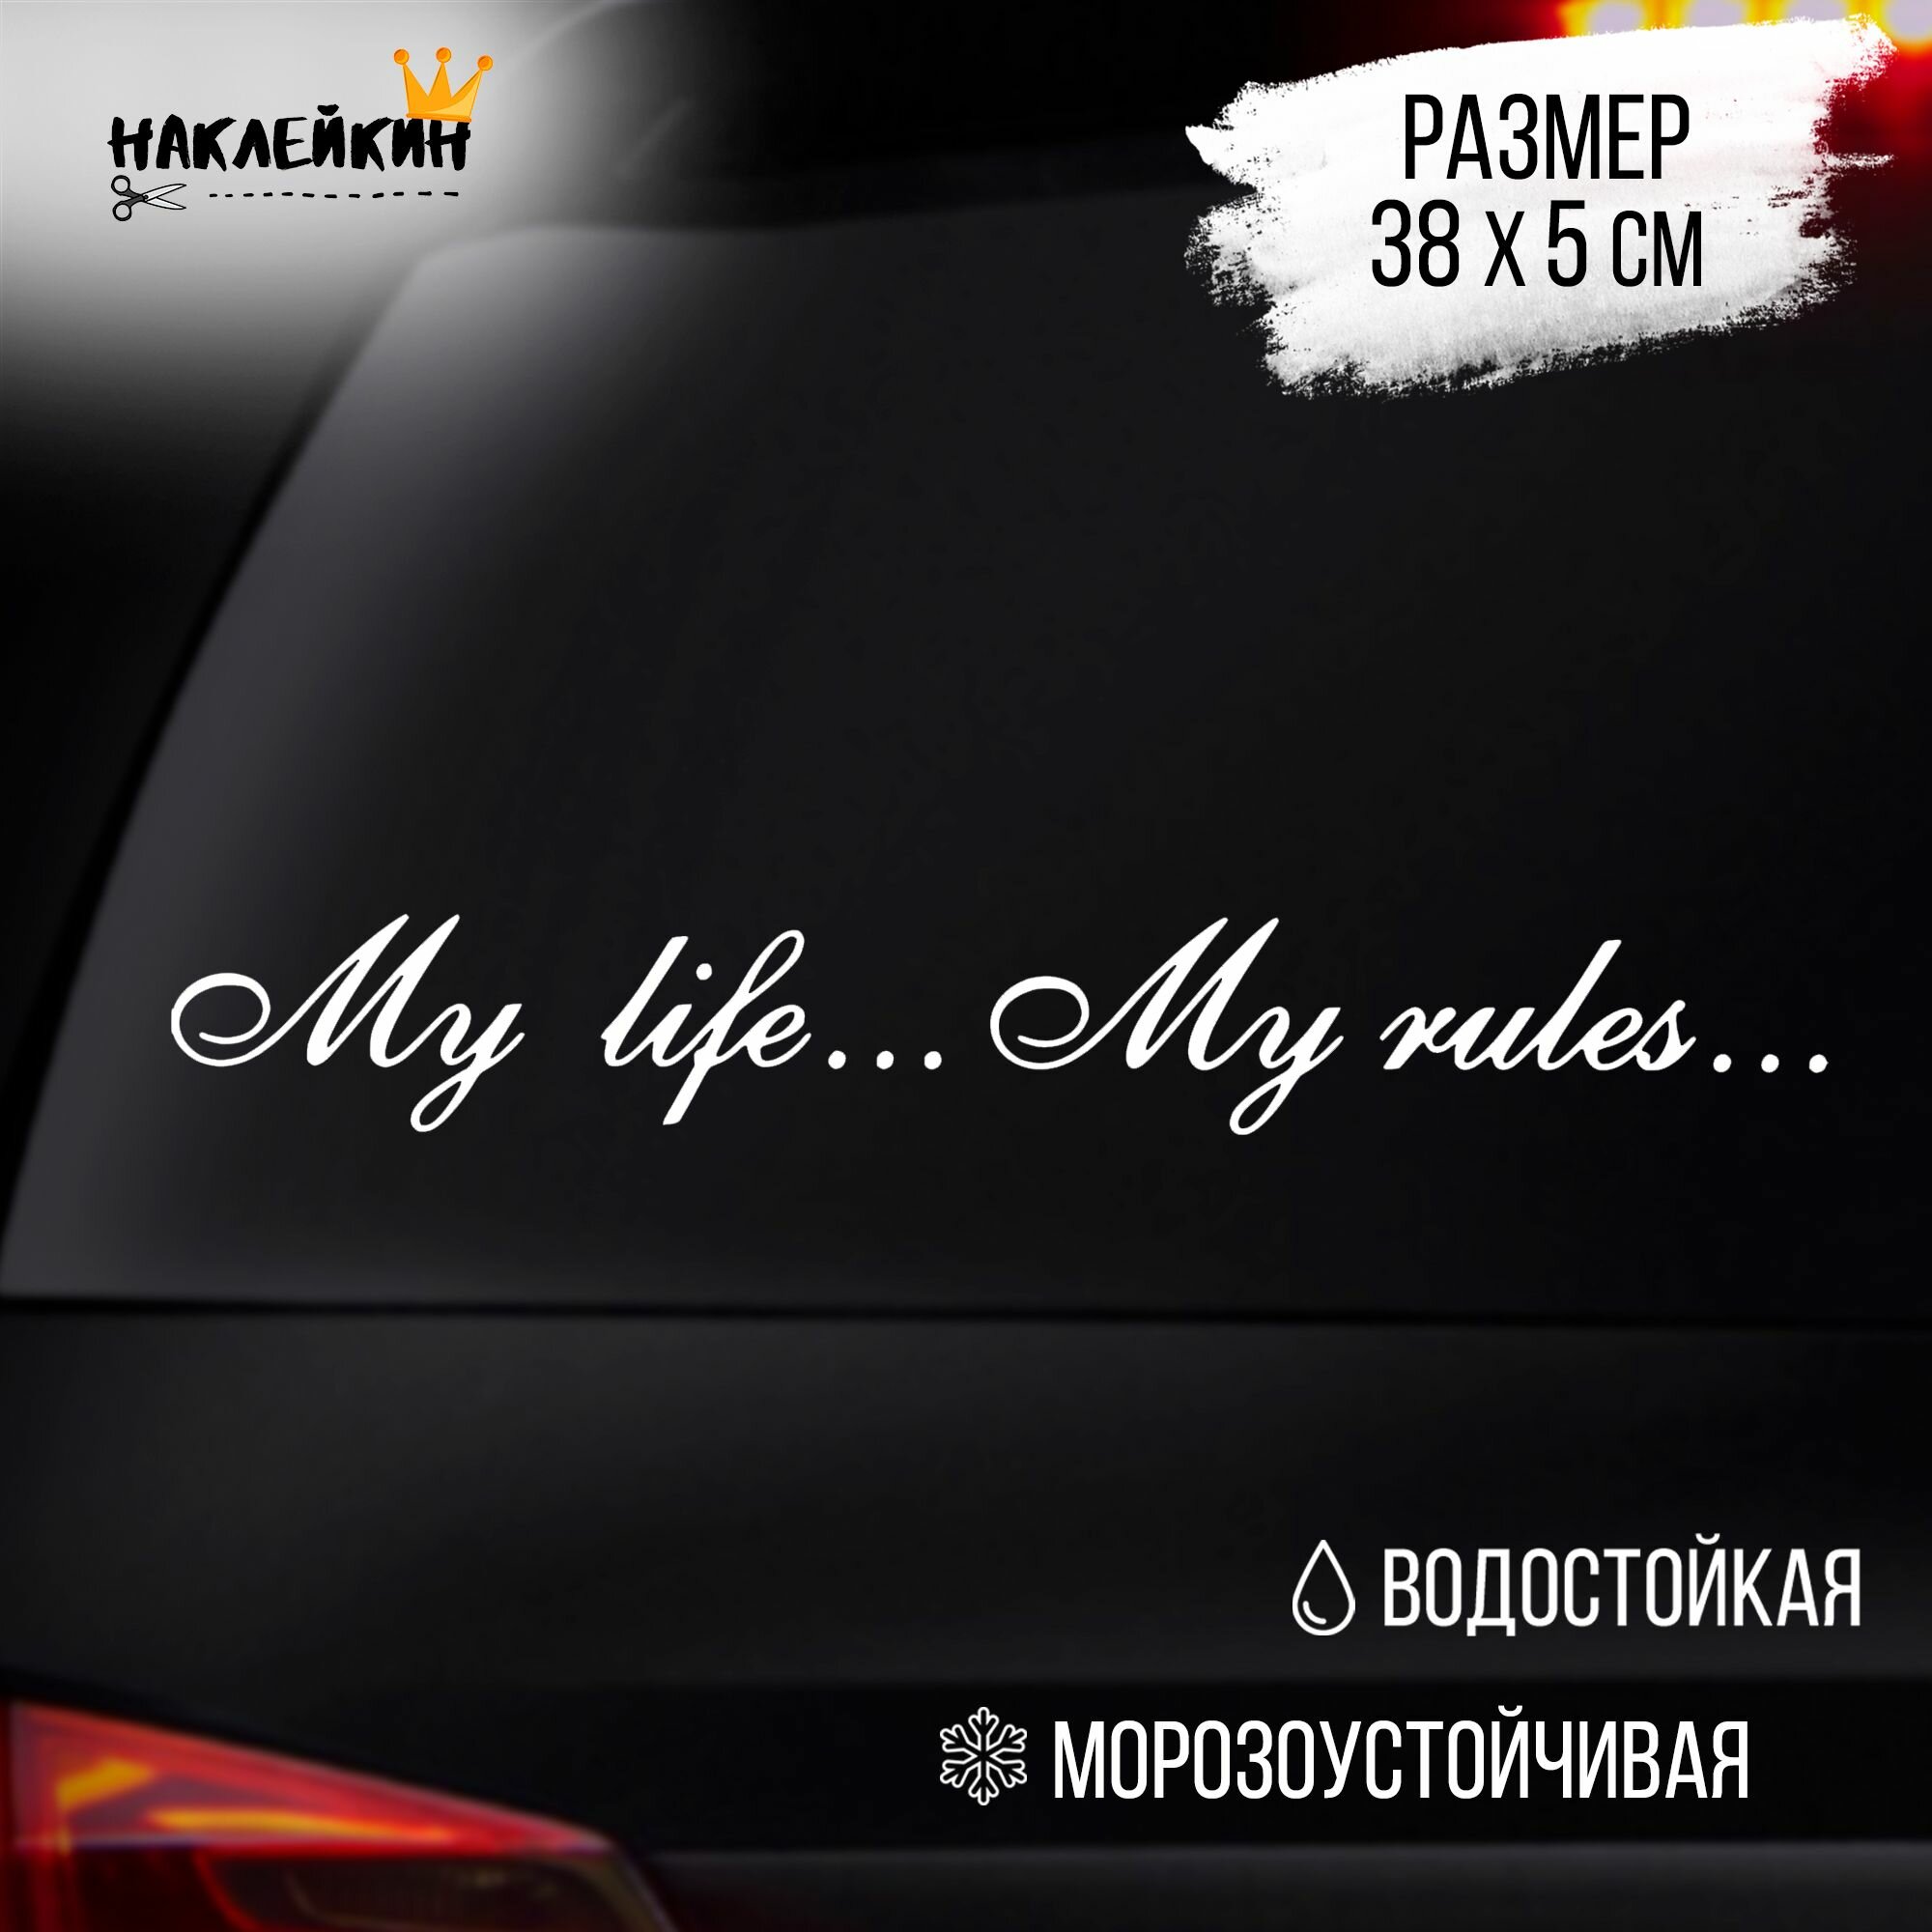 Наклейка виниловая на авто "My life - My rules", 37 см, белый